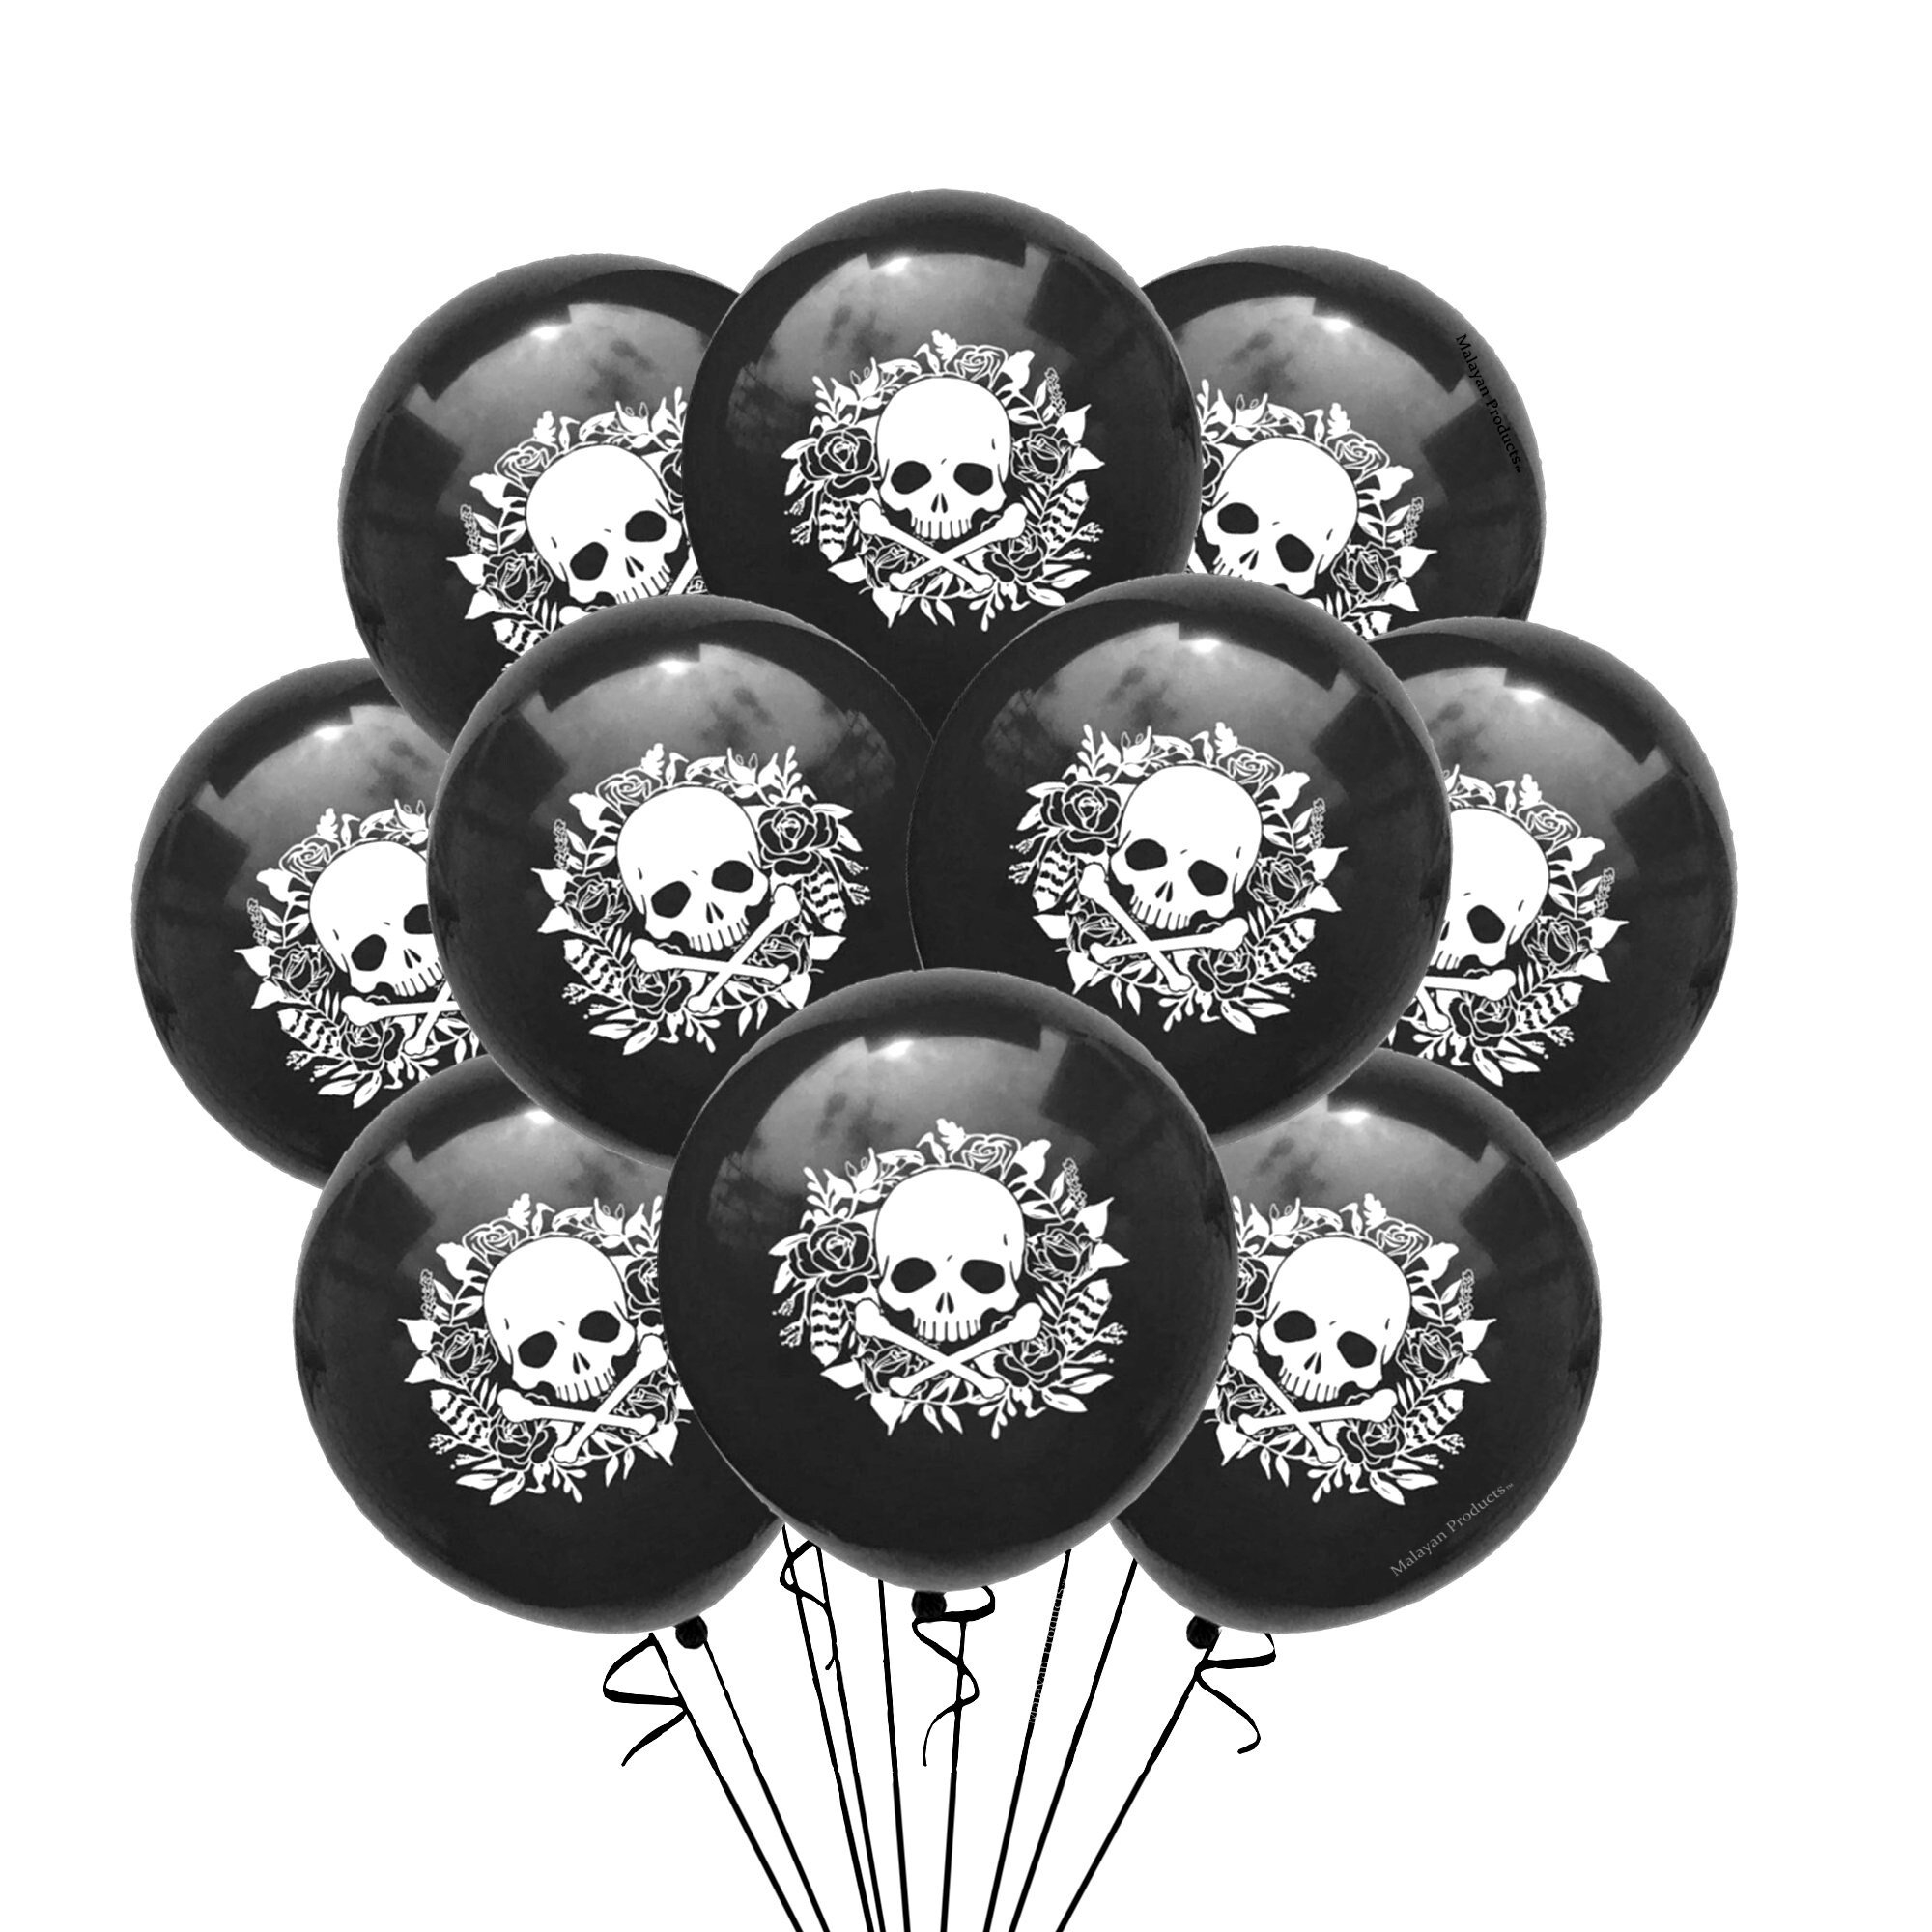 Skull & Crossbones Balloons 12 Skull Balloons Latex Jolley Roger